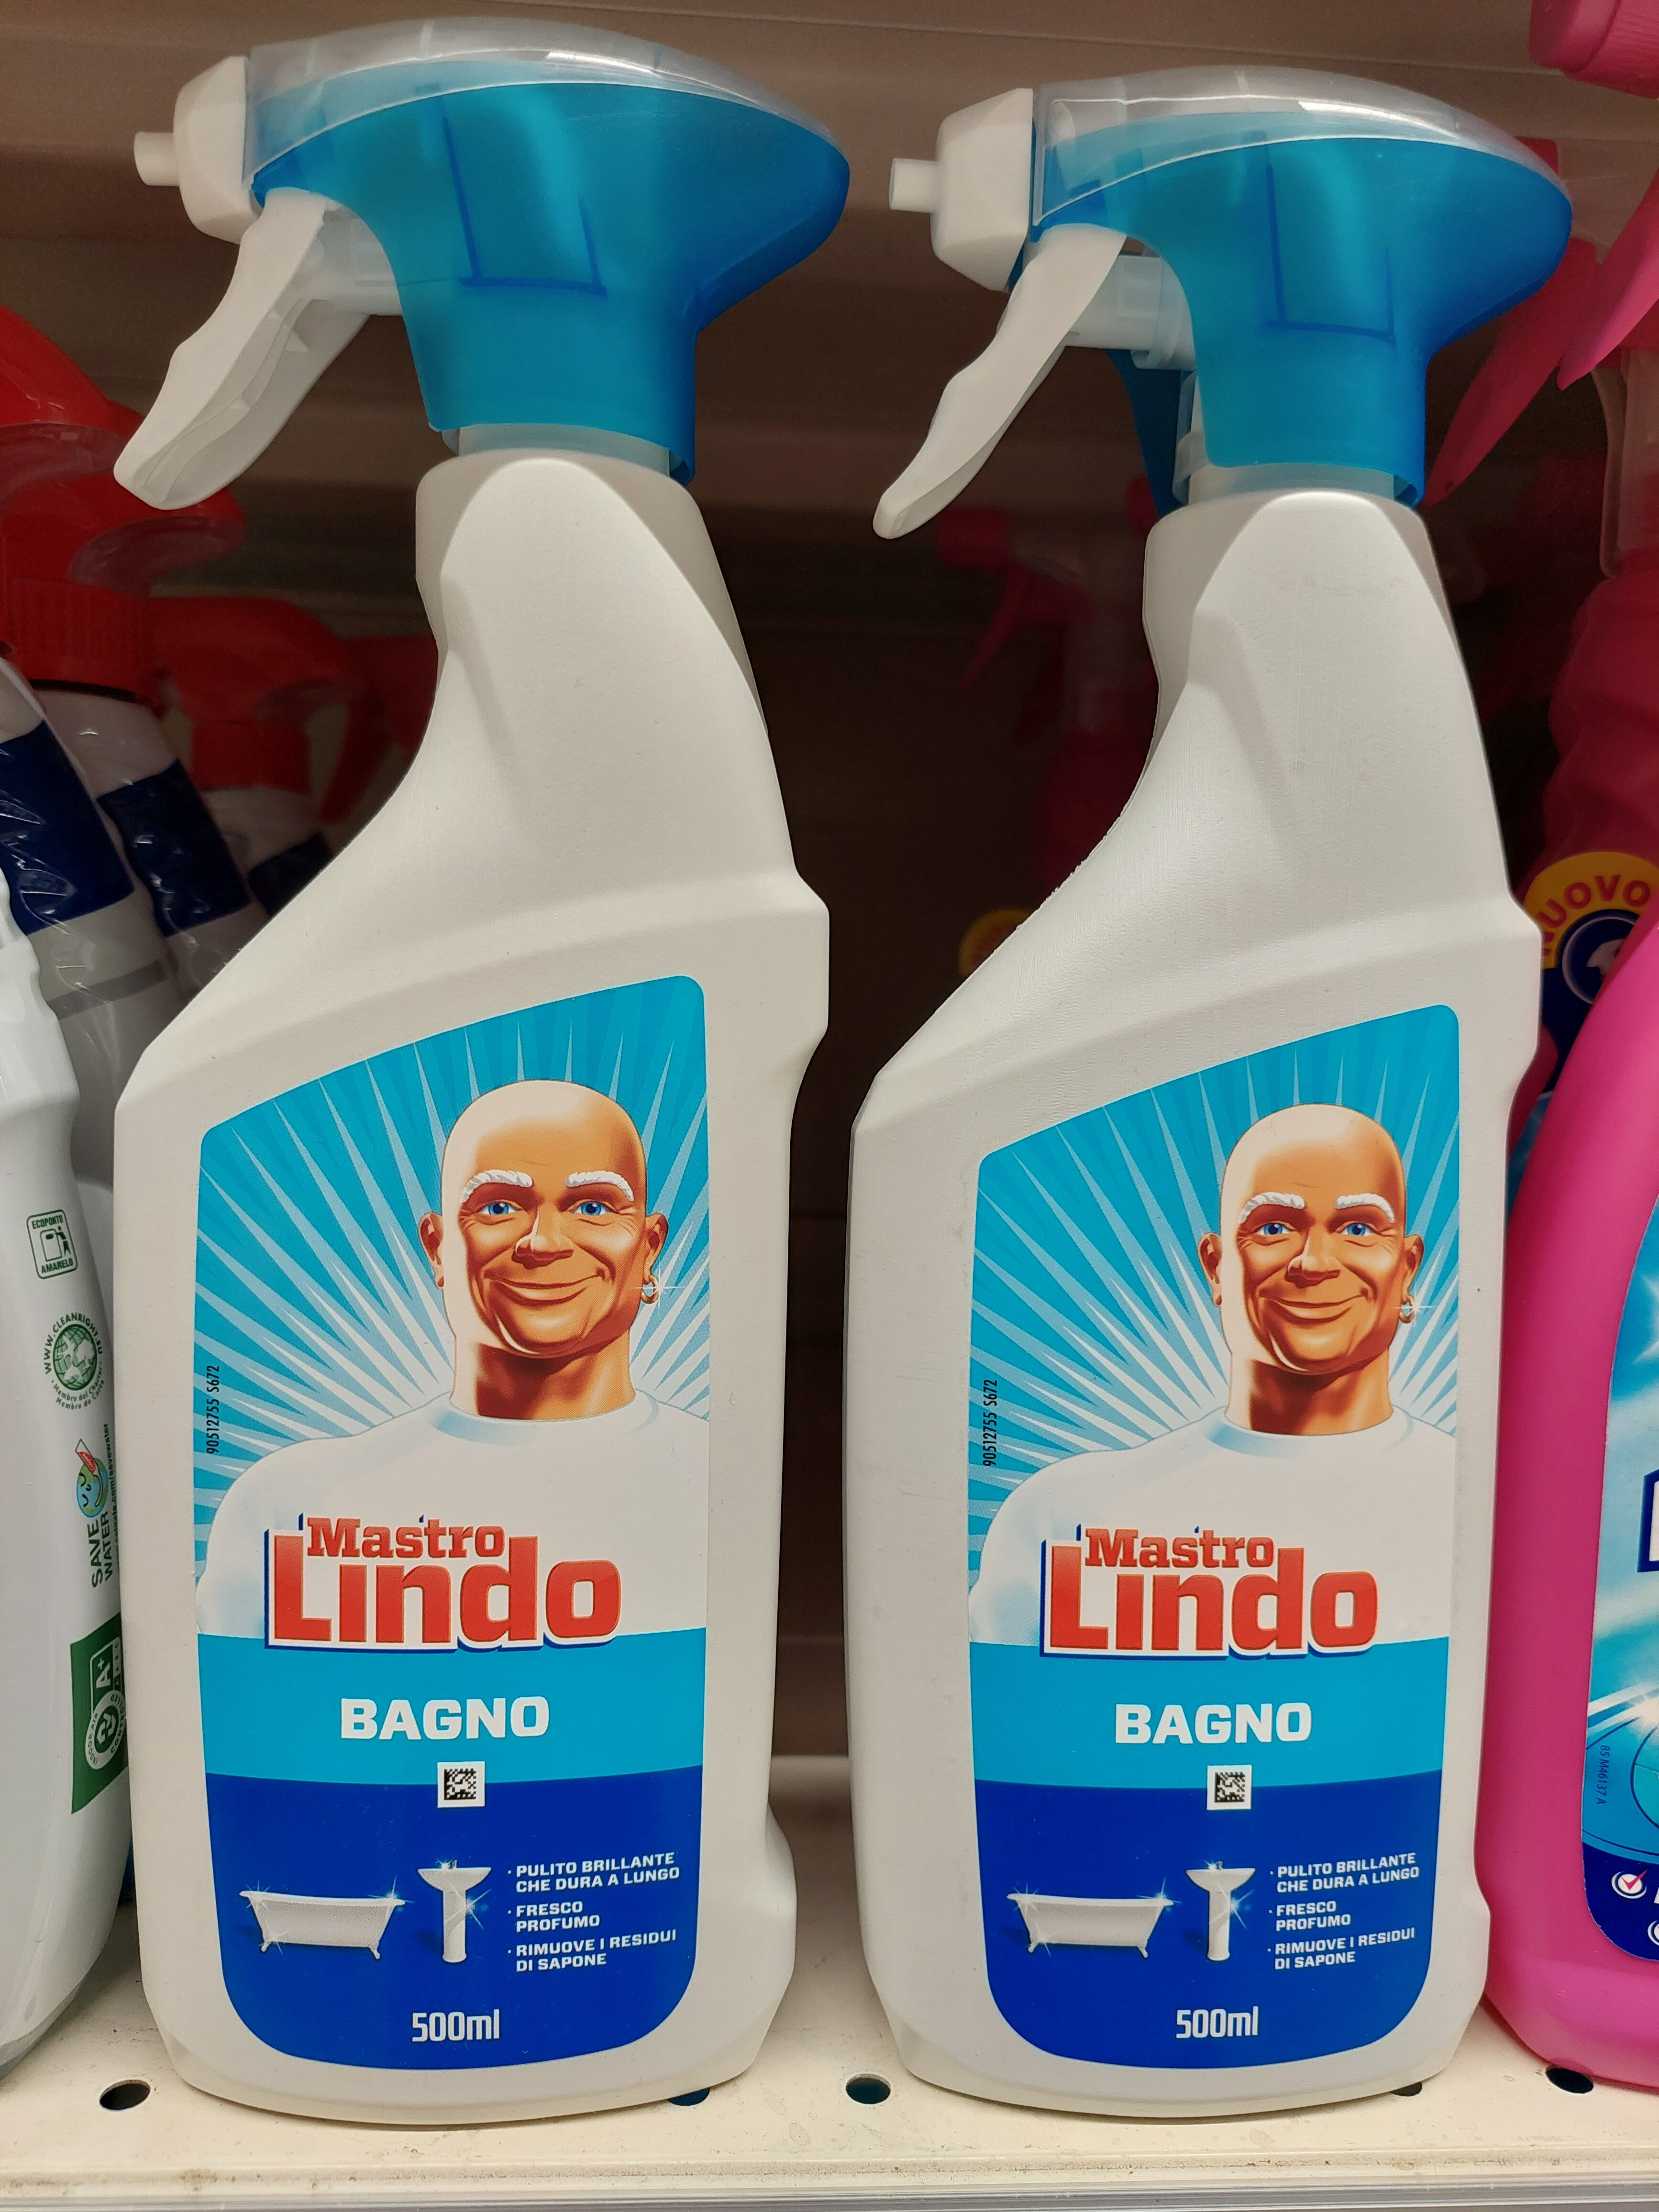 Mastro Lindo bagno - Product - it